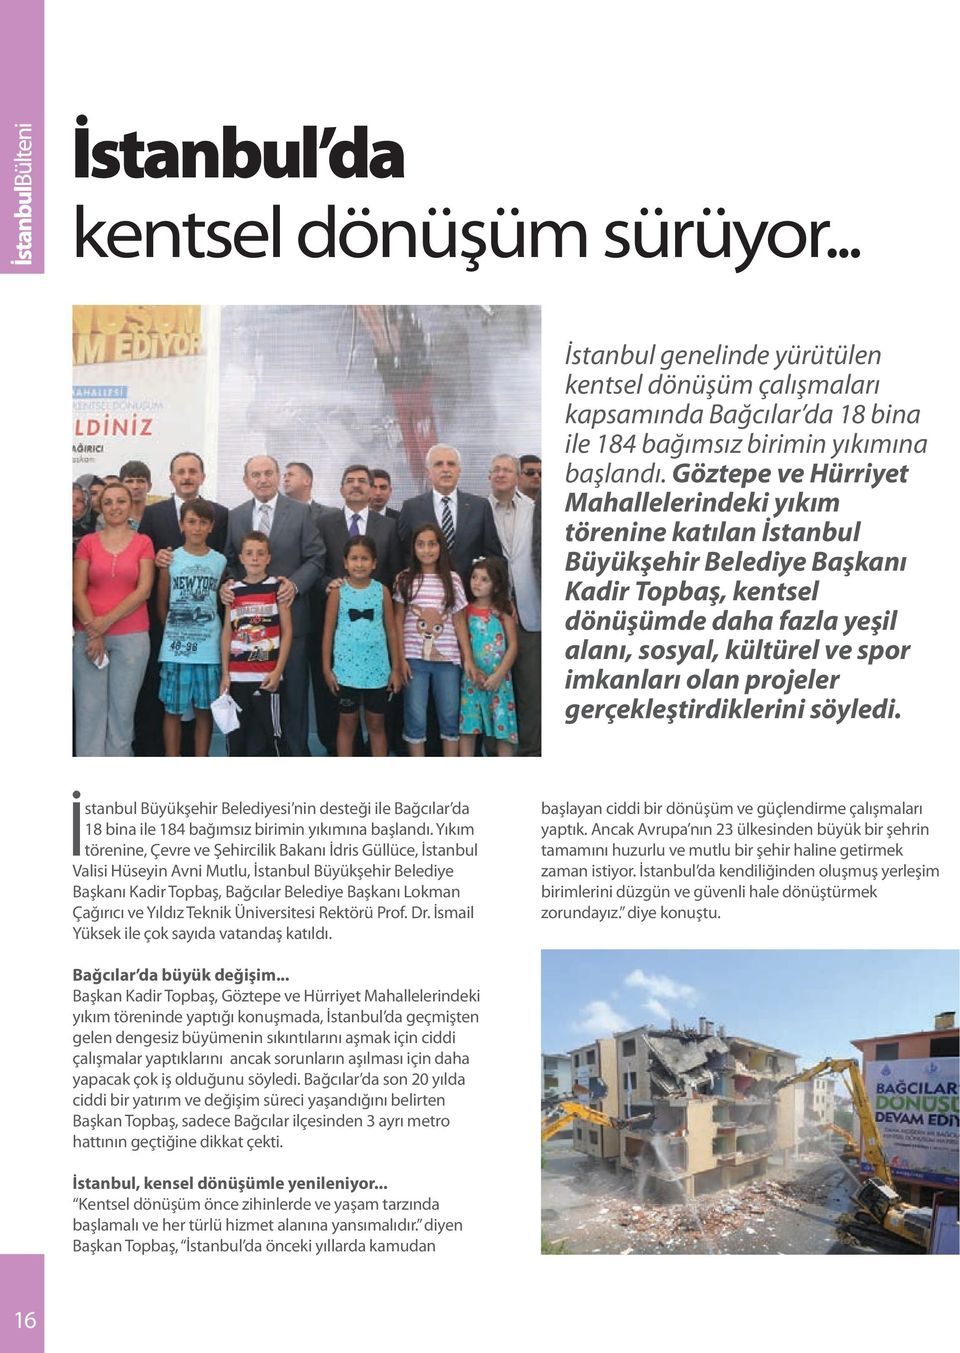 projeler gerçekleştirdiklerini söyledi. İstanbul Büyükşehir Belediyesi nin desteği ile Bağcılar da 18 bina ile 184 bağımsız birimin yıkımına başlandı.